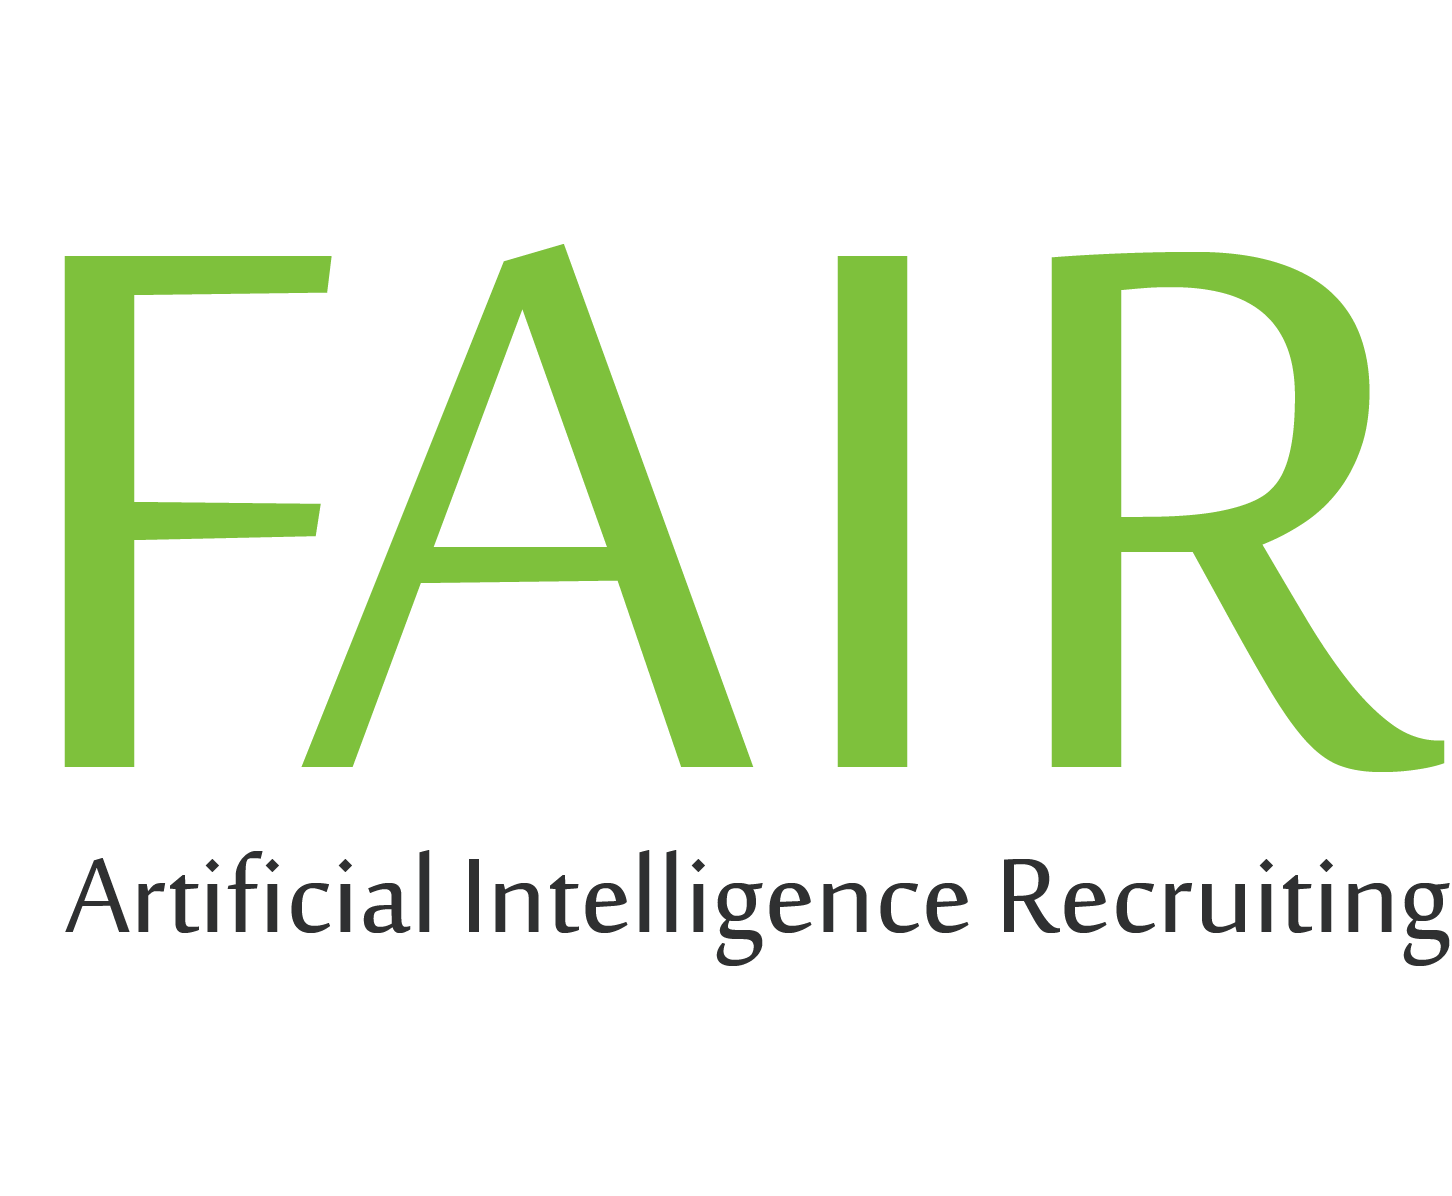 FAIR - Artificial Intelligence Recruiting